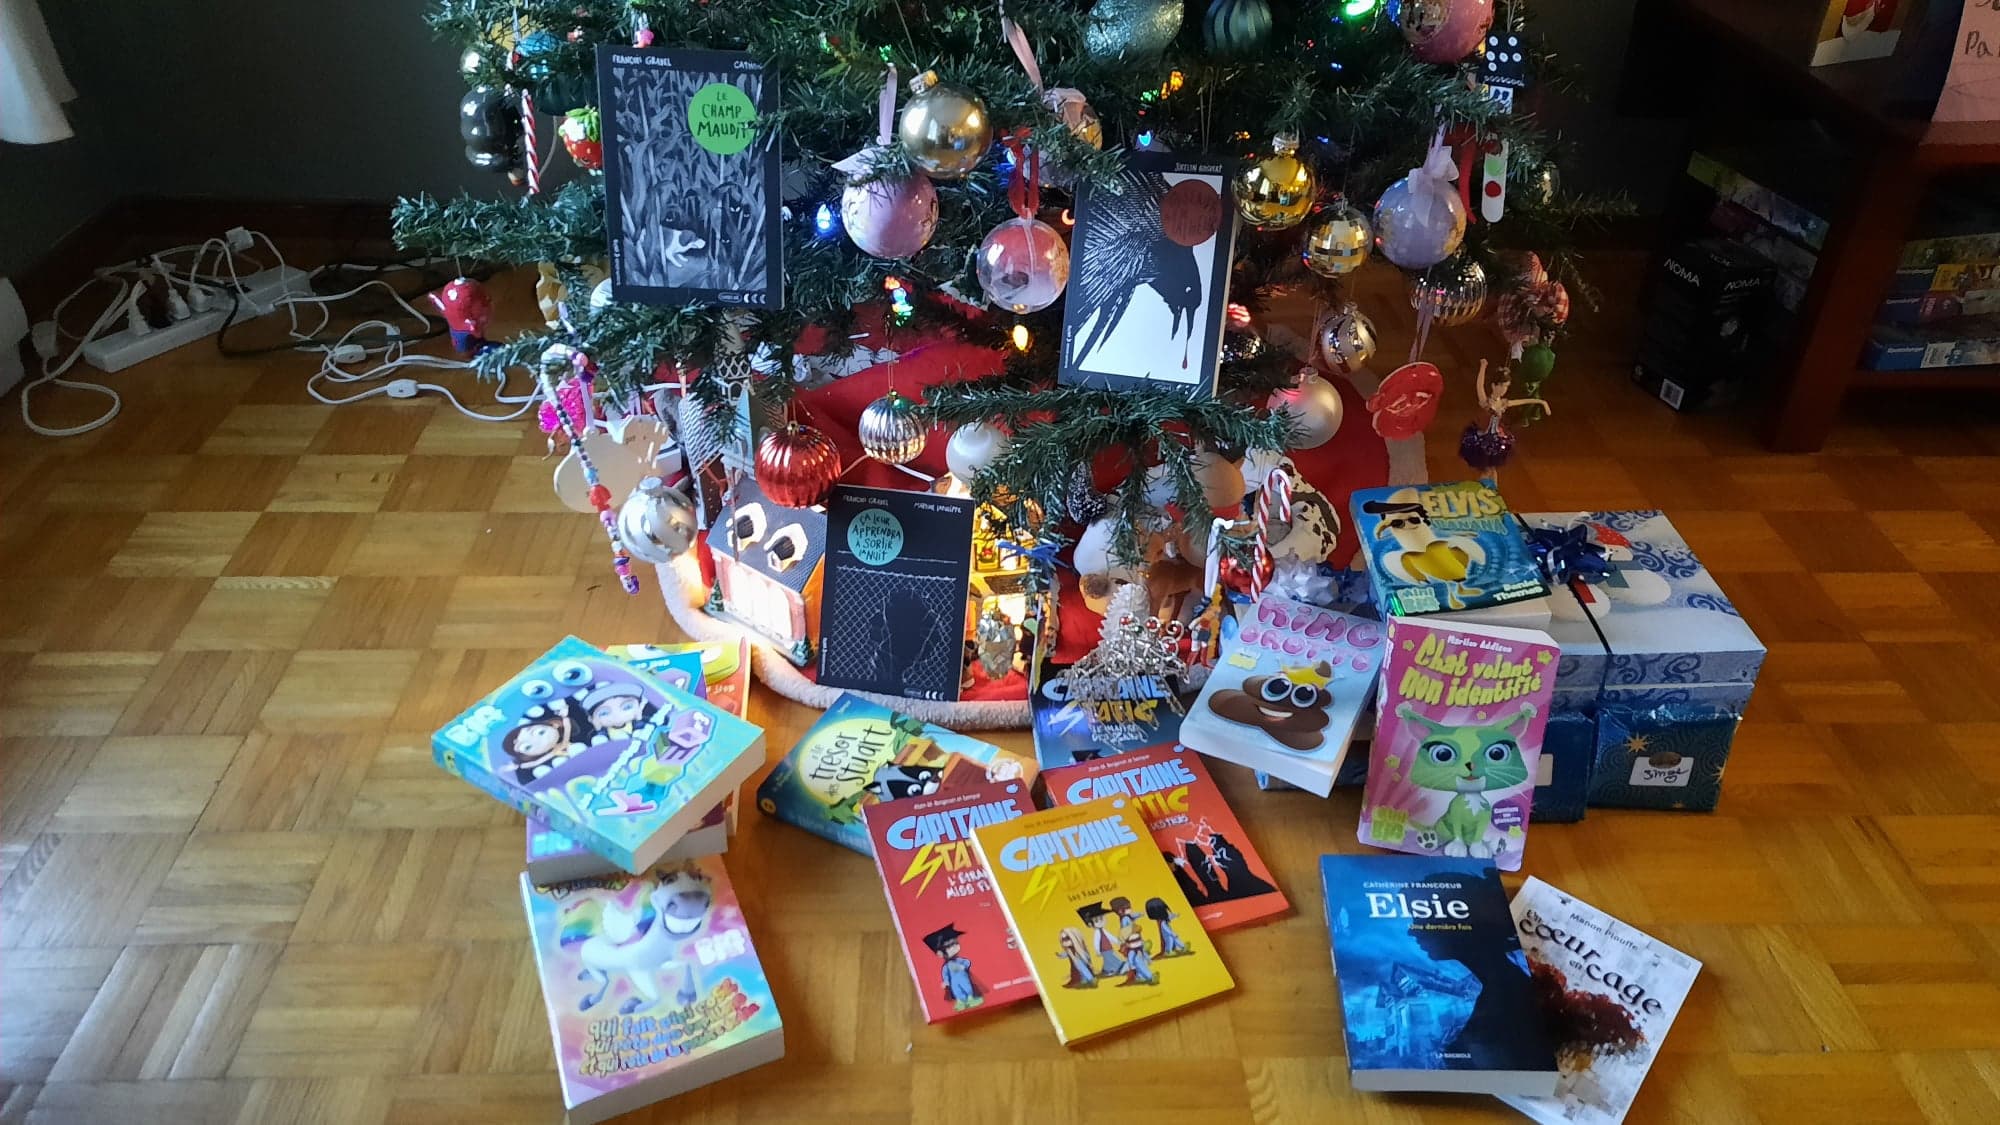 Des livres à offrir pour Noël aux enfants de 6 à 9 ans - L